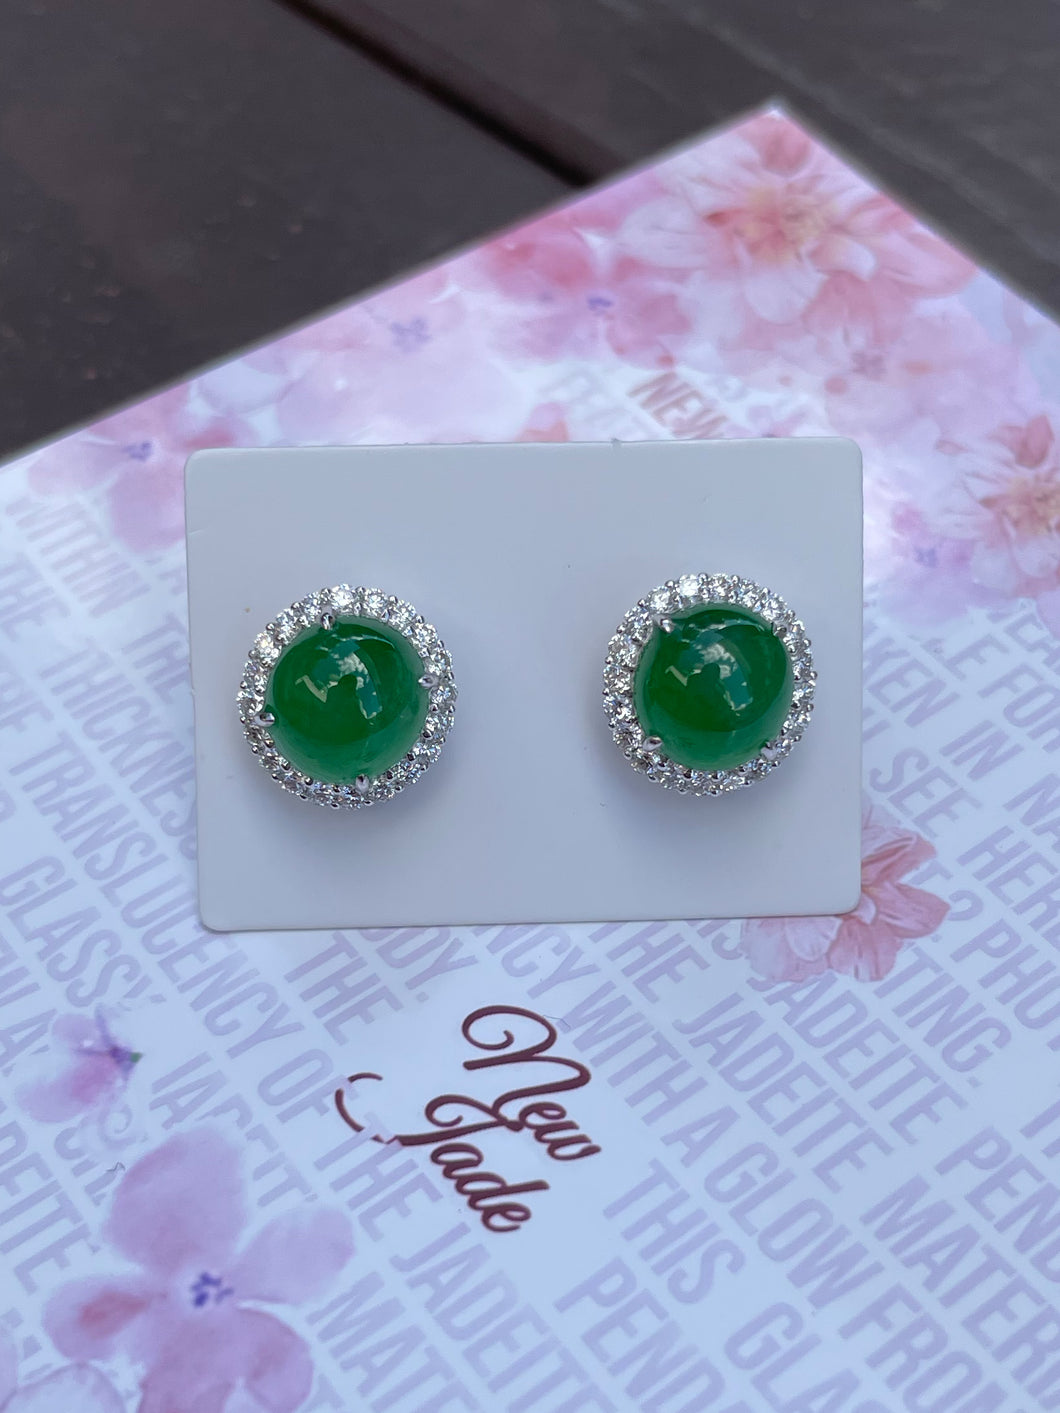 Green Cabochon Jadeite Earrings (NJE013)